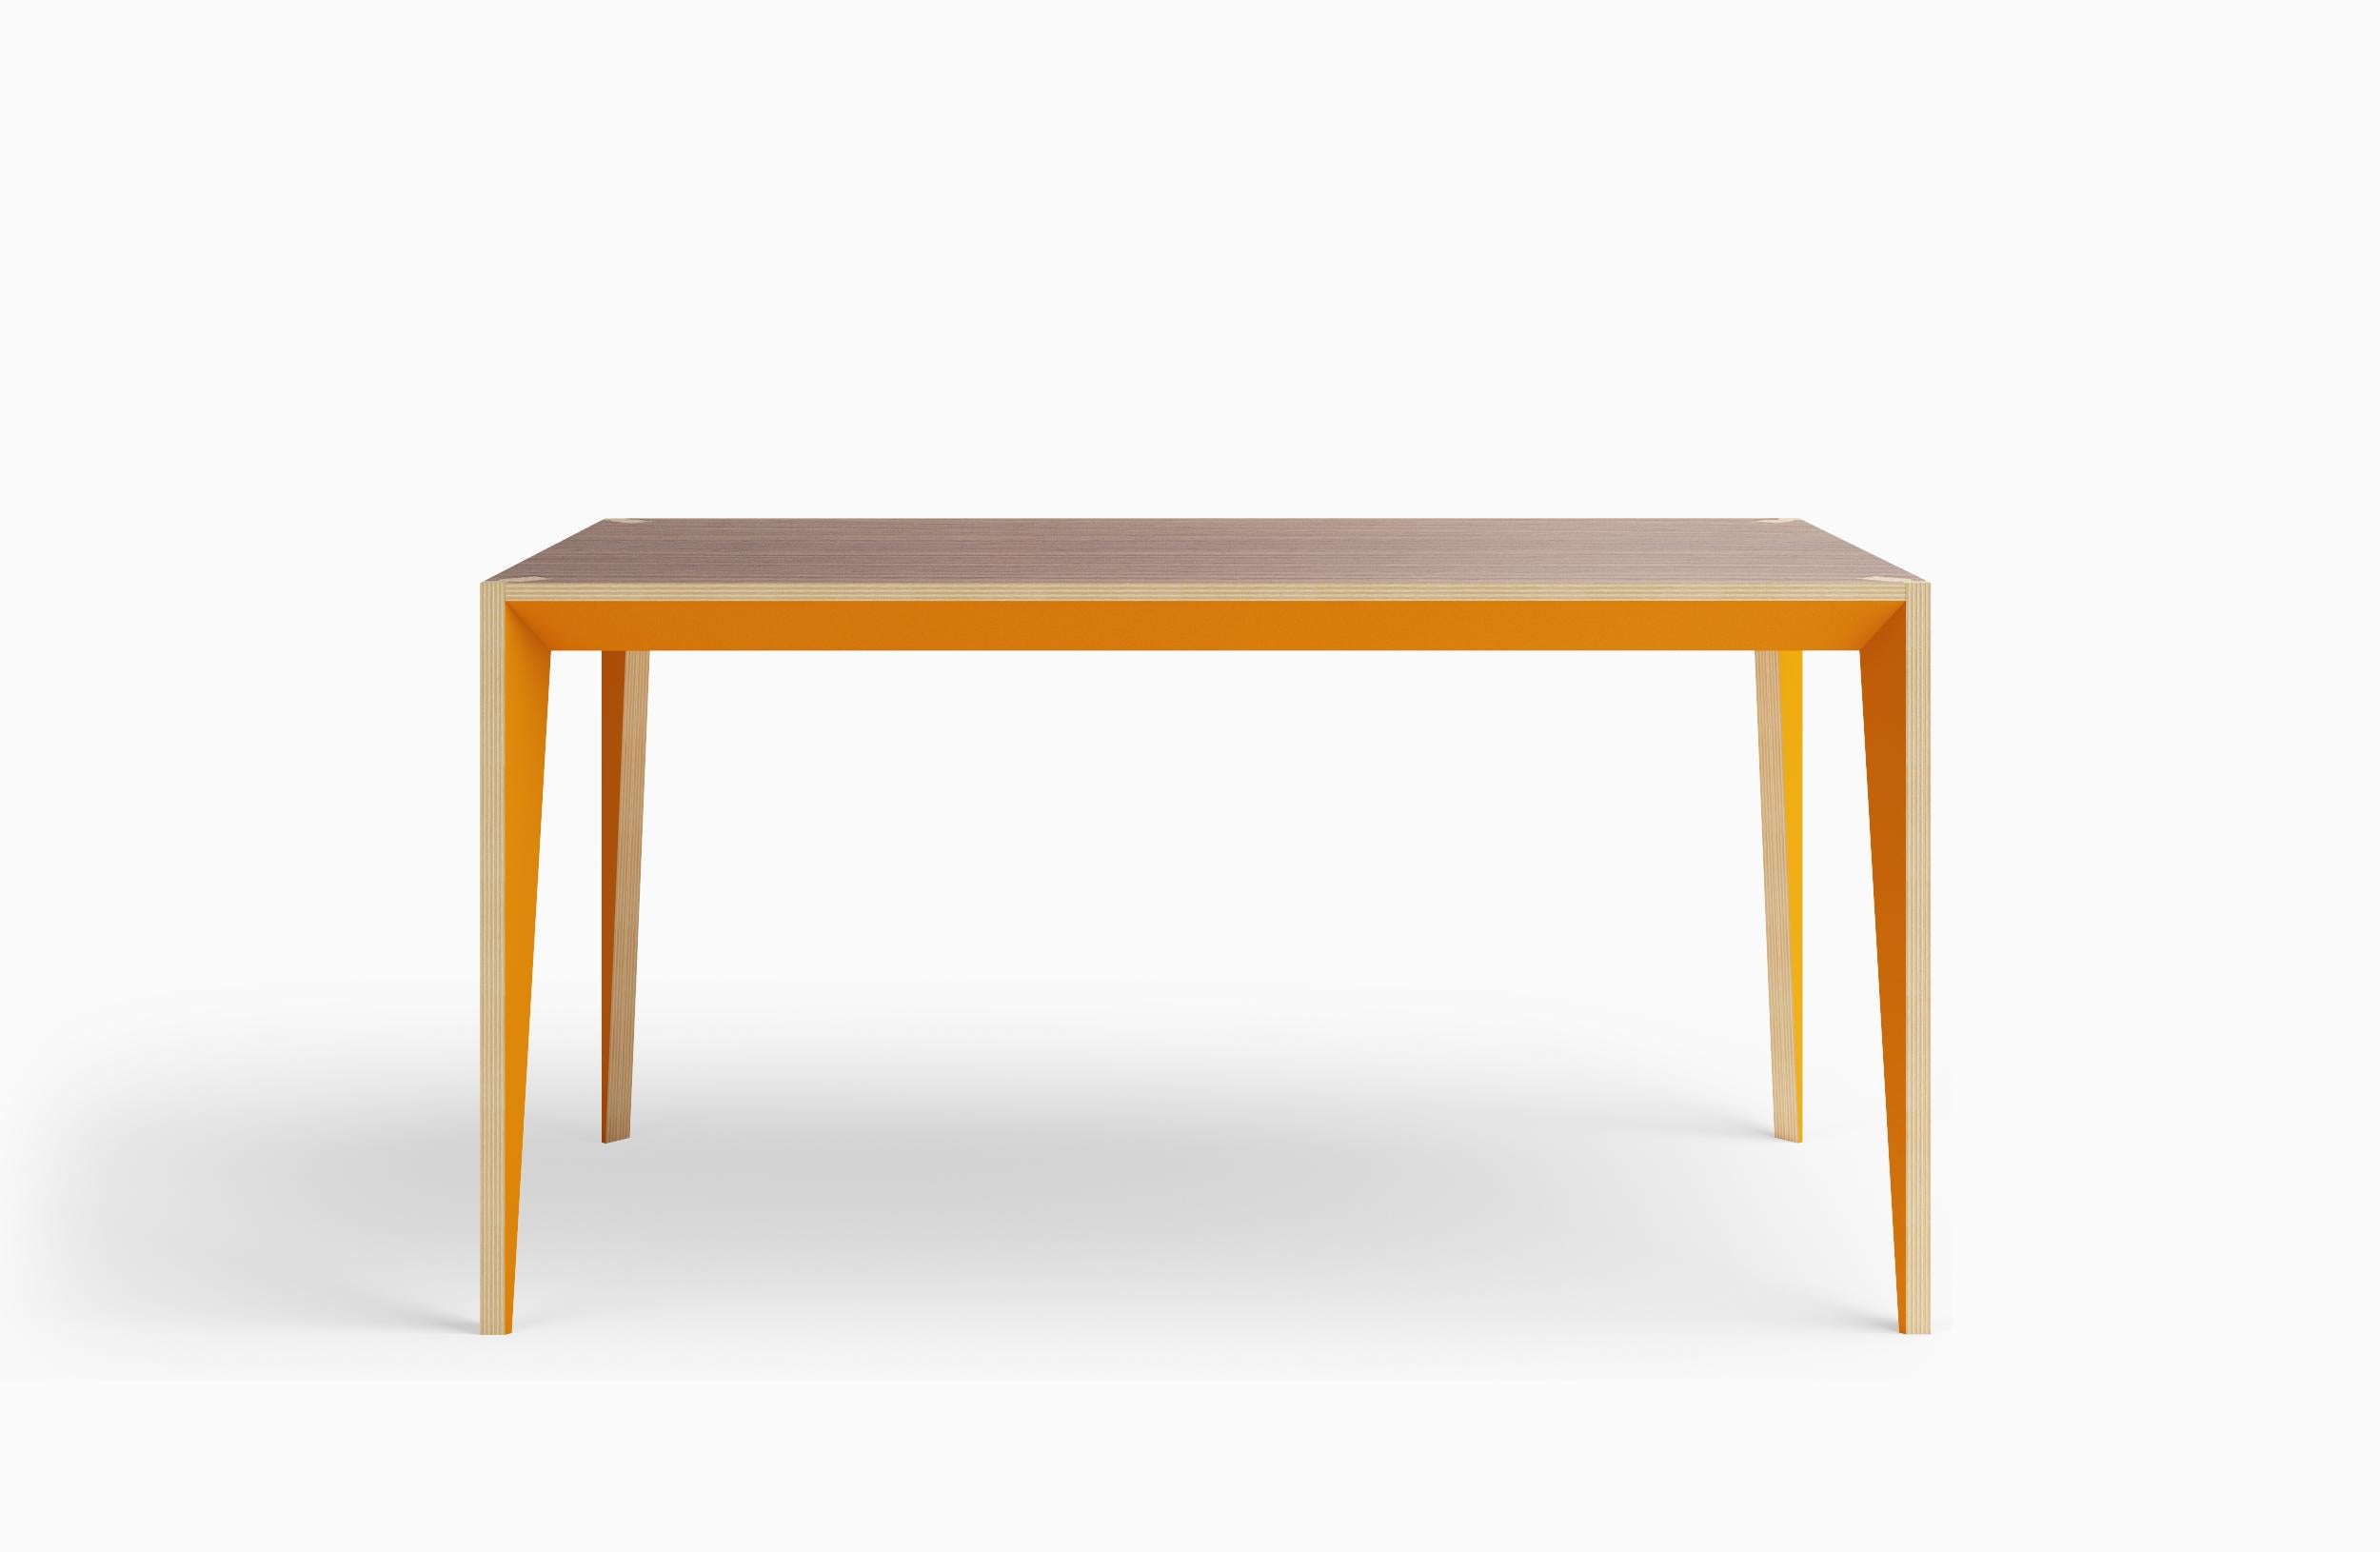 Fusionnant des lignes épurées et des matériaux chaleureux, la géométrie à facettes de la table MiMi crée un profil élancé et gracieux ponctué de surfaces peintes qui captent la lumière. Ce design moderne et élégant rend l'artisanat italien